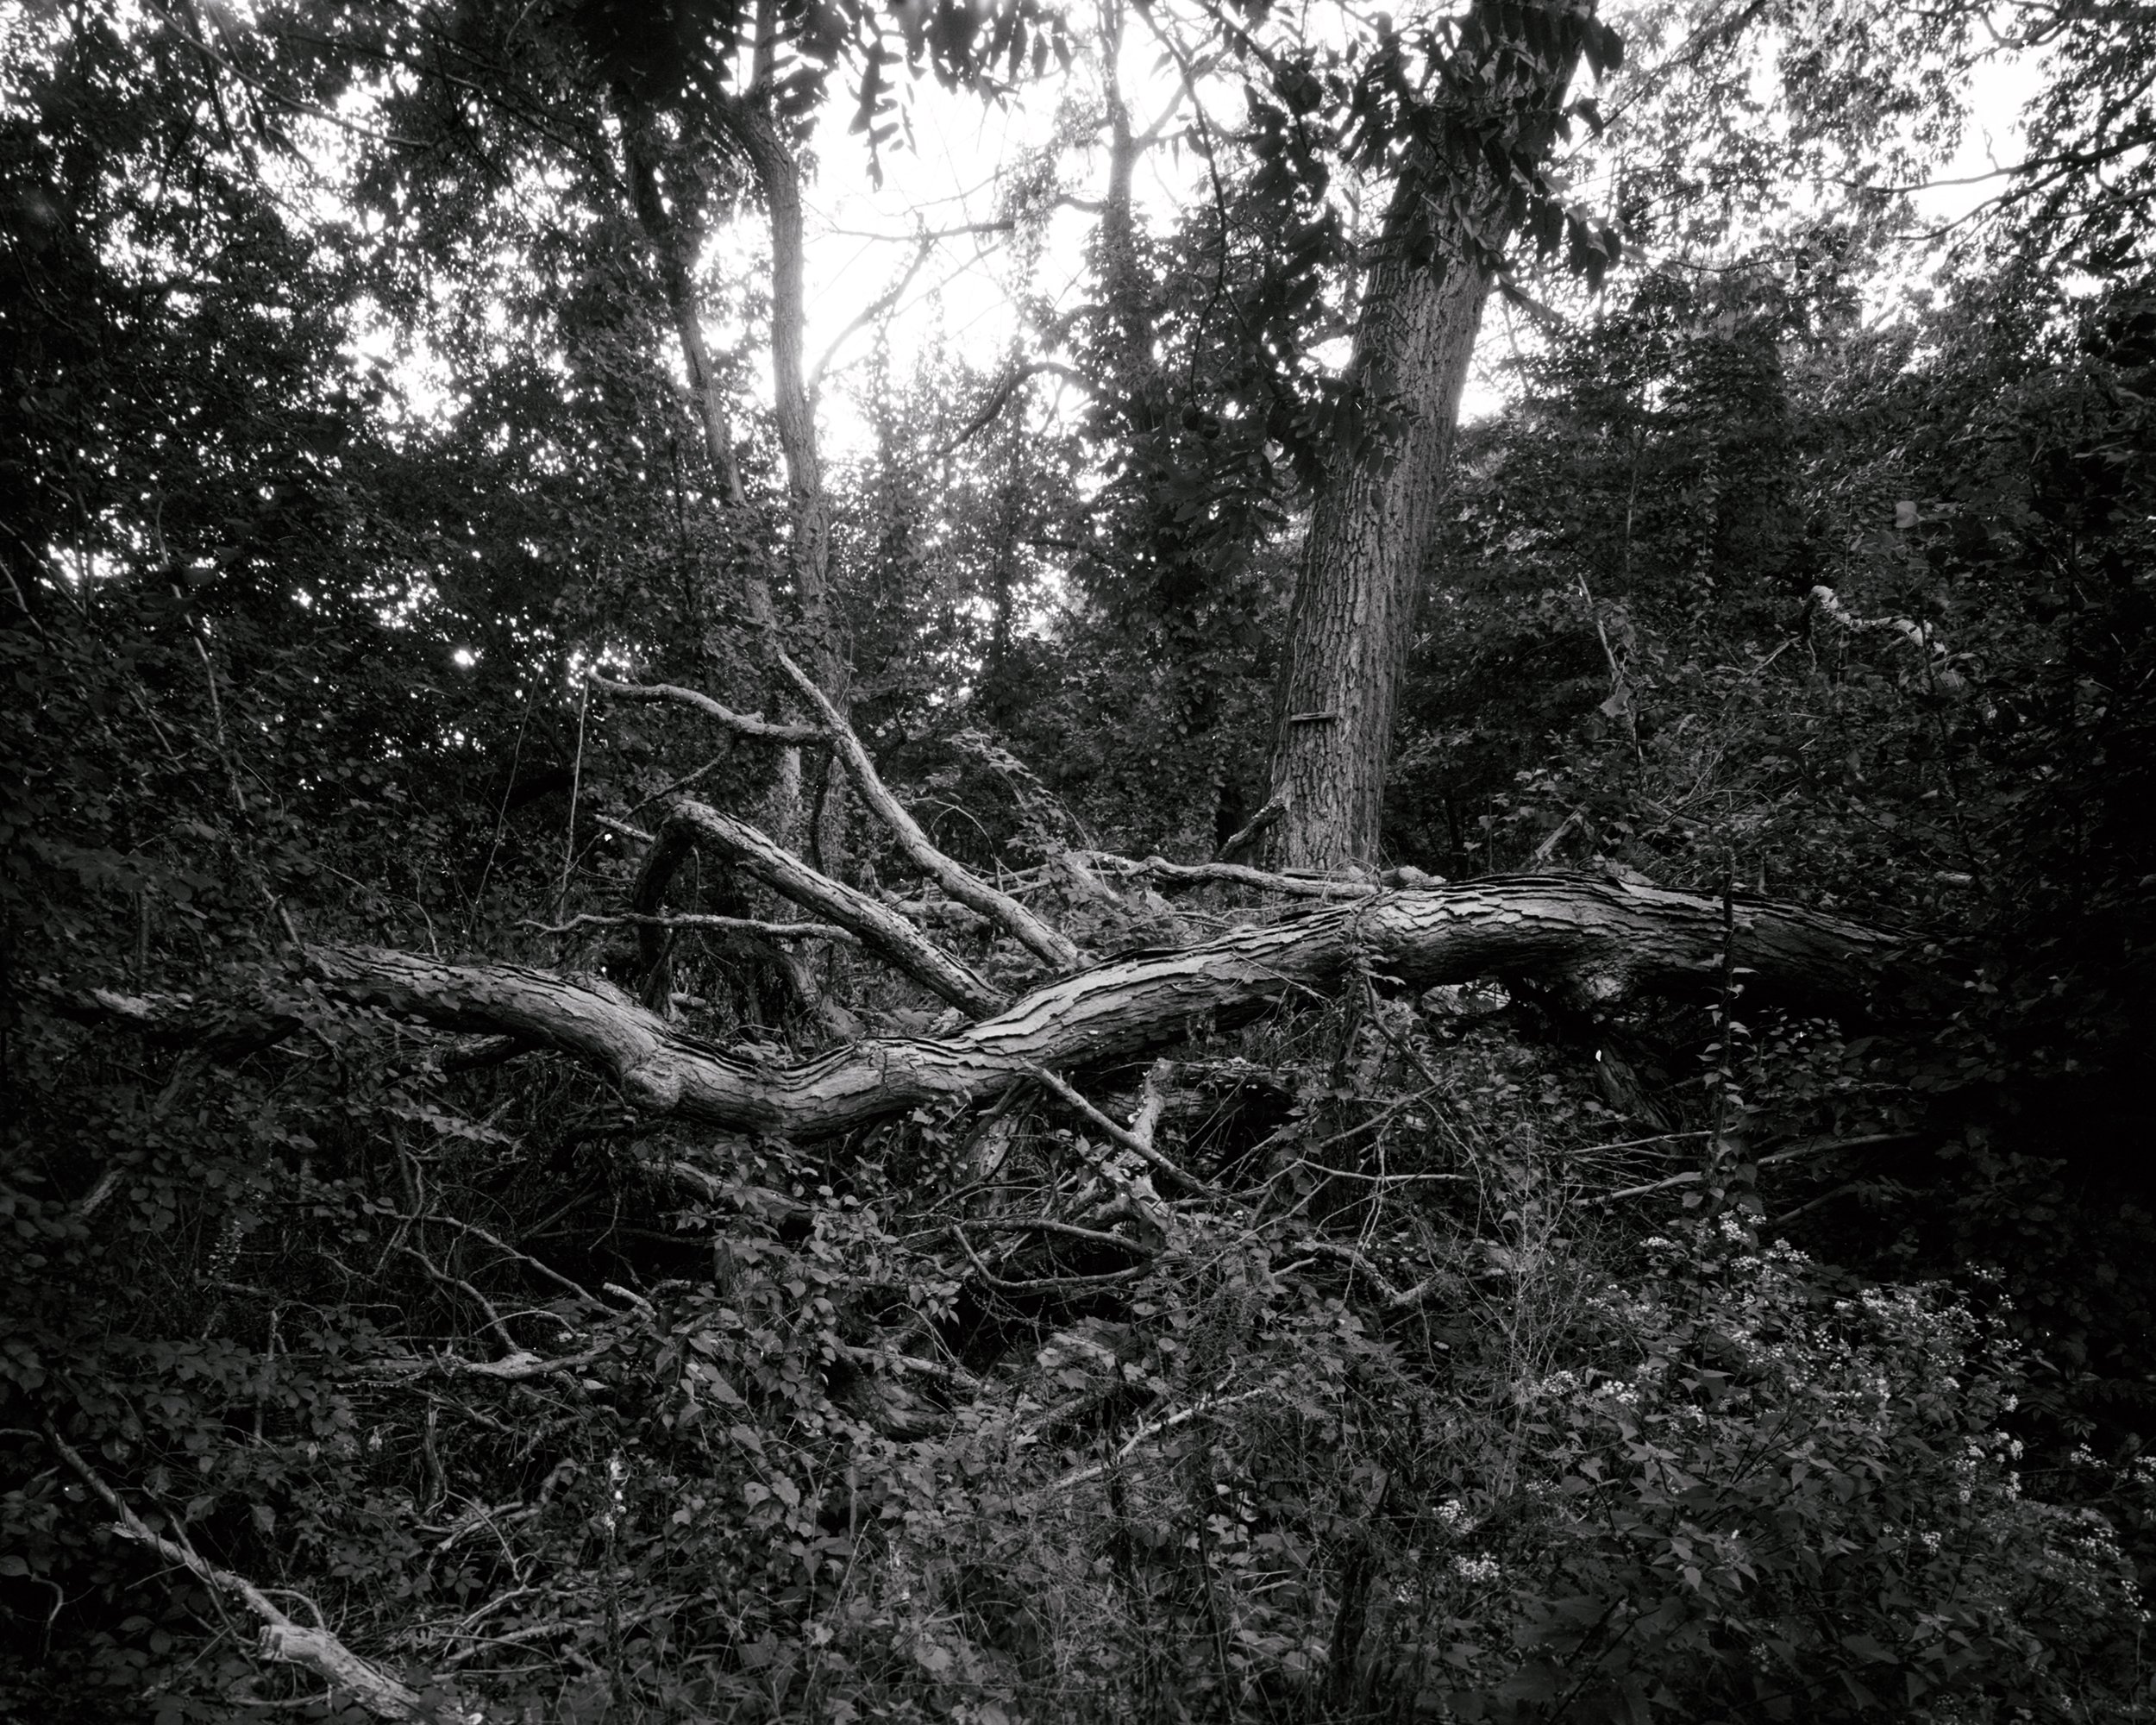 Fallen tree in Tivoli, 2021